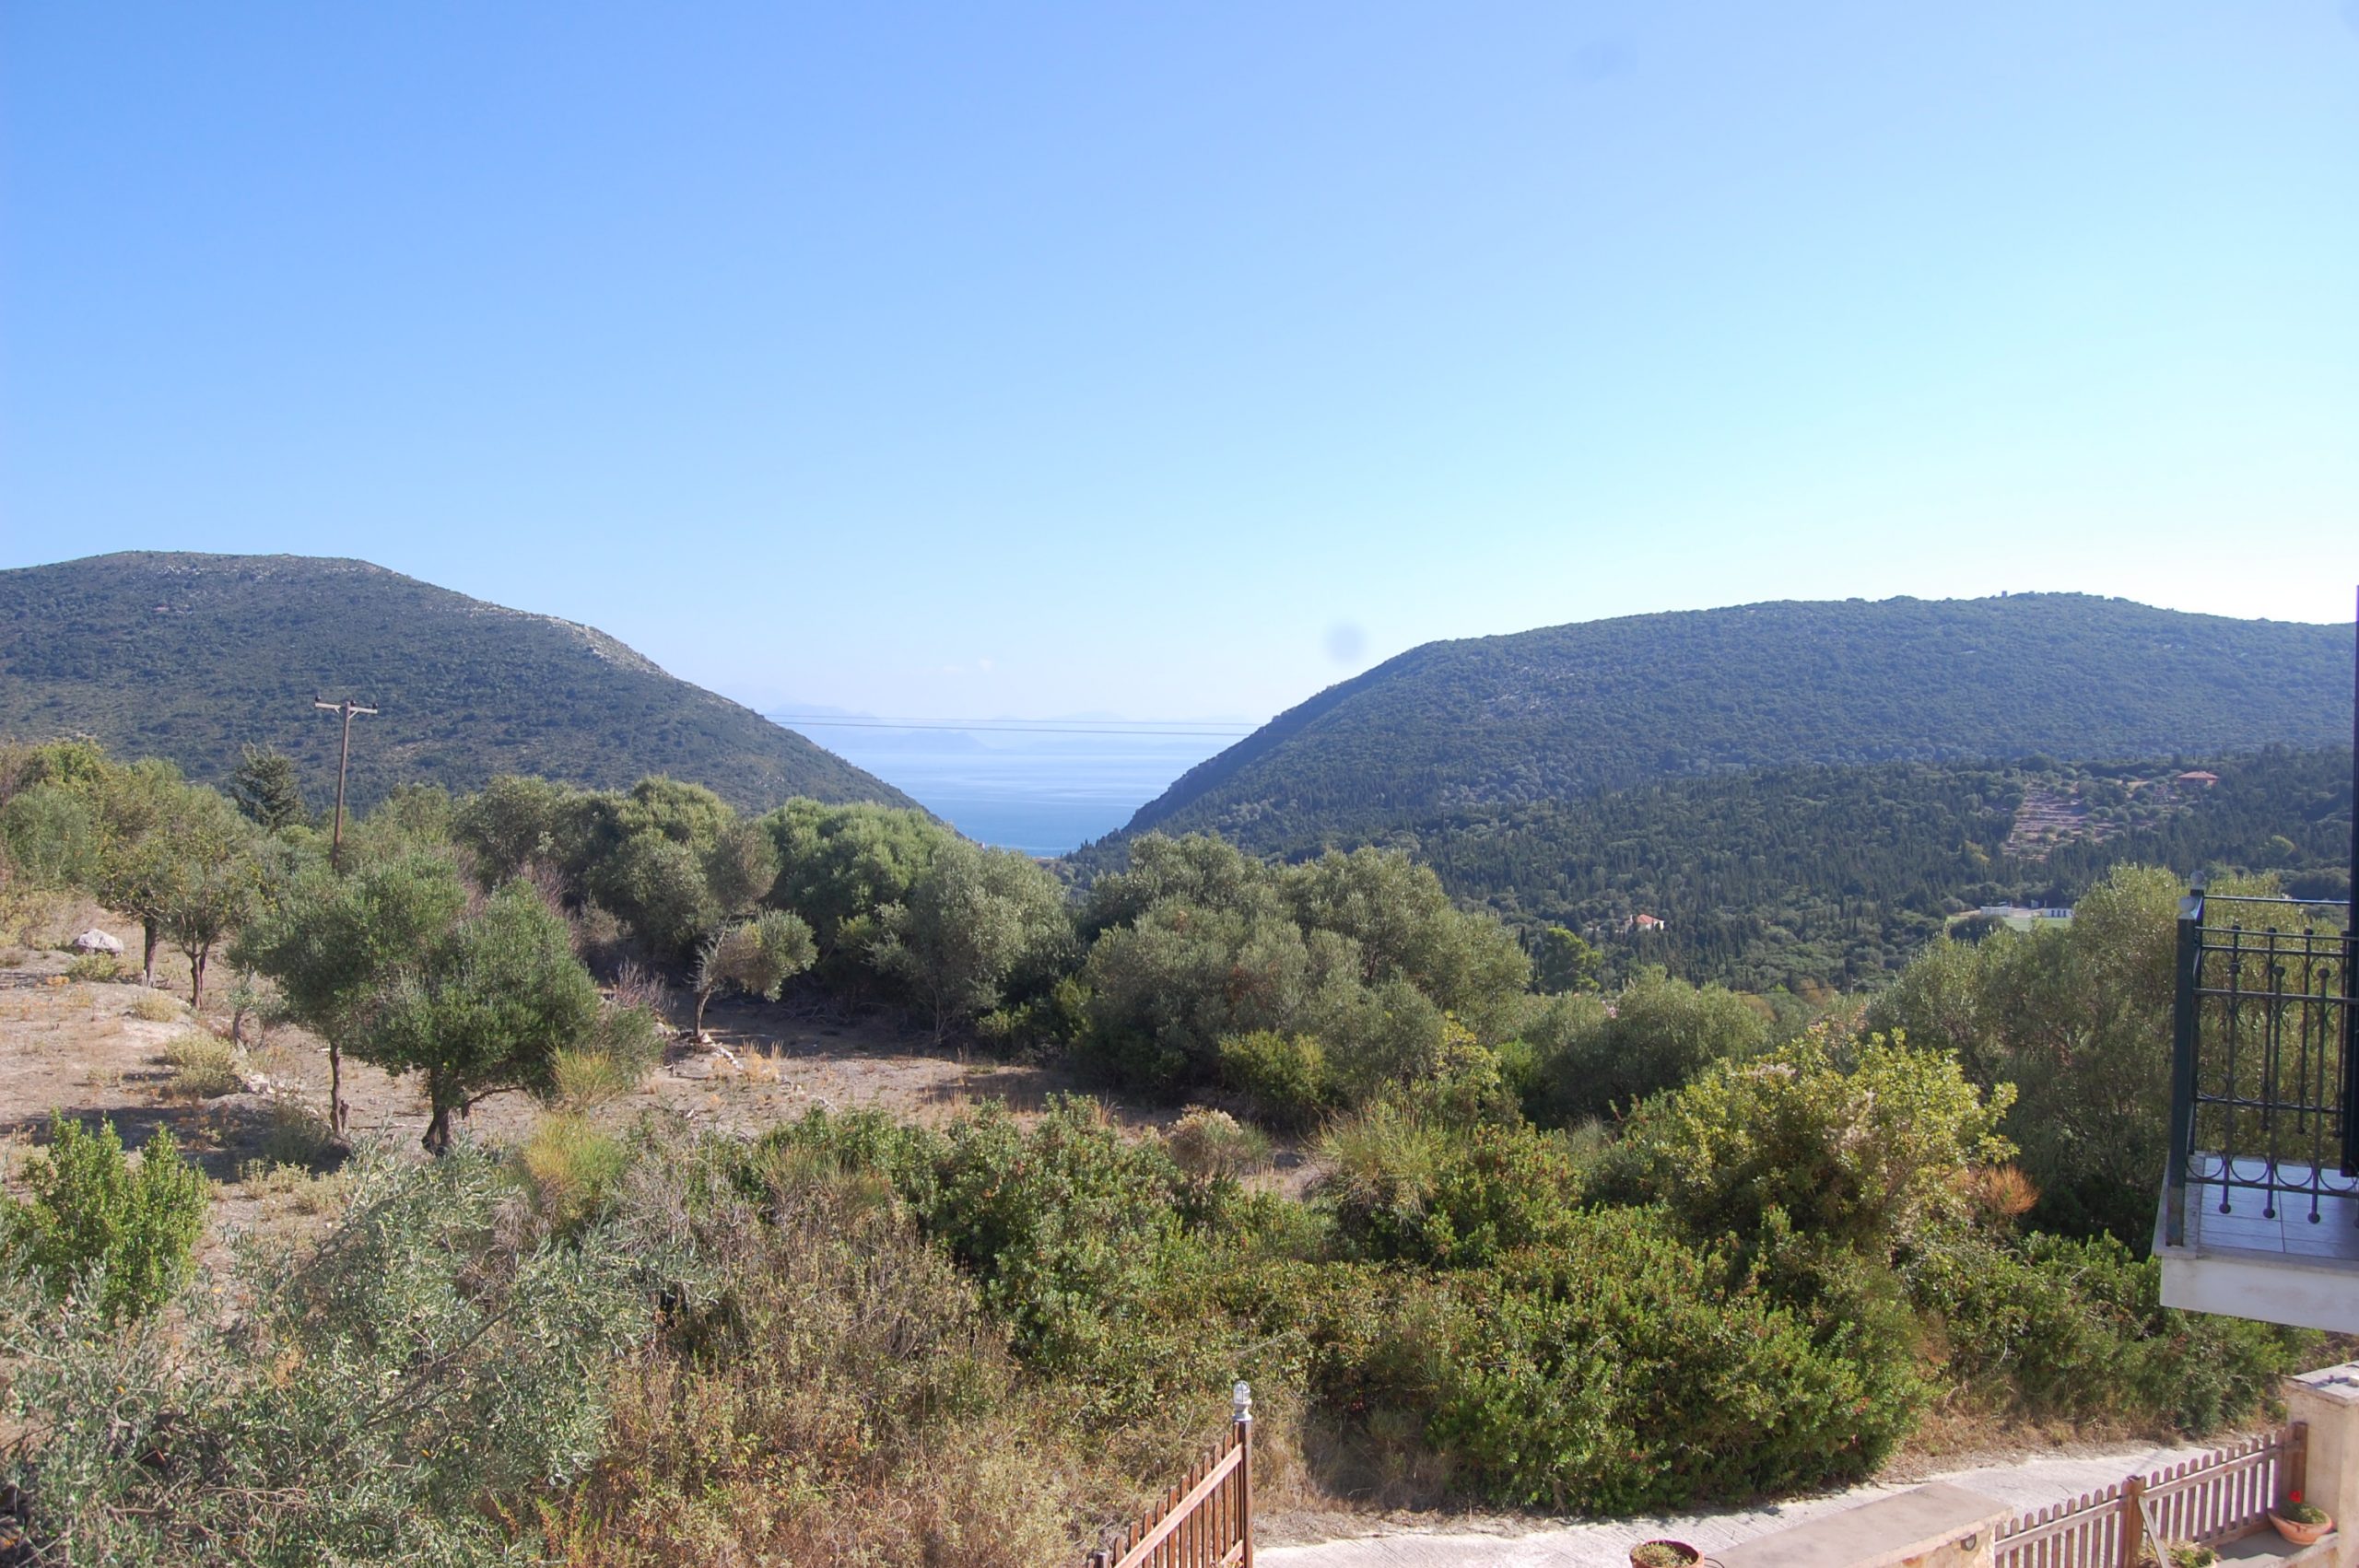 Θέα από το Iriana Village προς ενοικίαση στην Ιθάκη Ελλάδα, Σταυρός